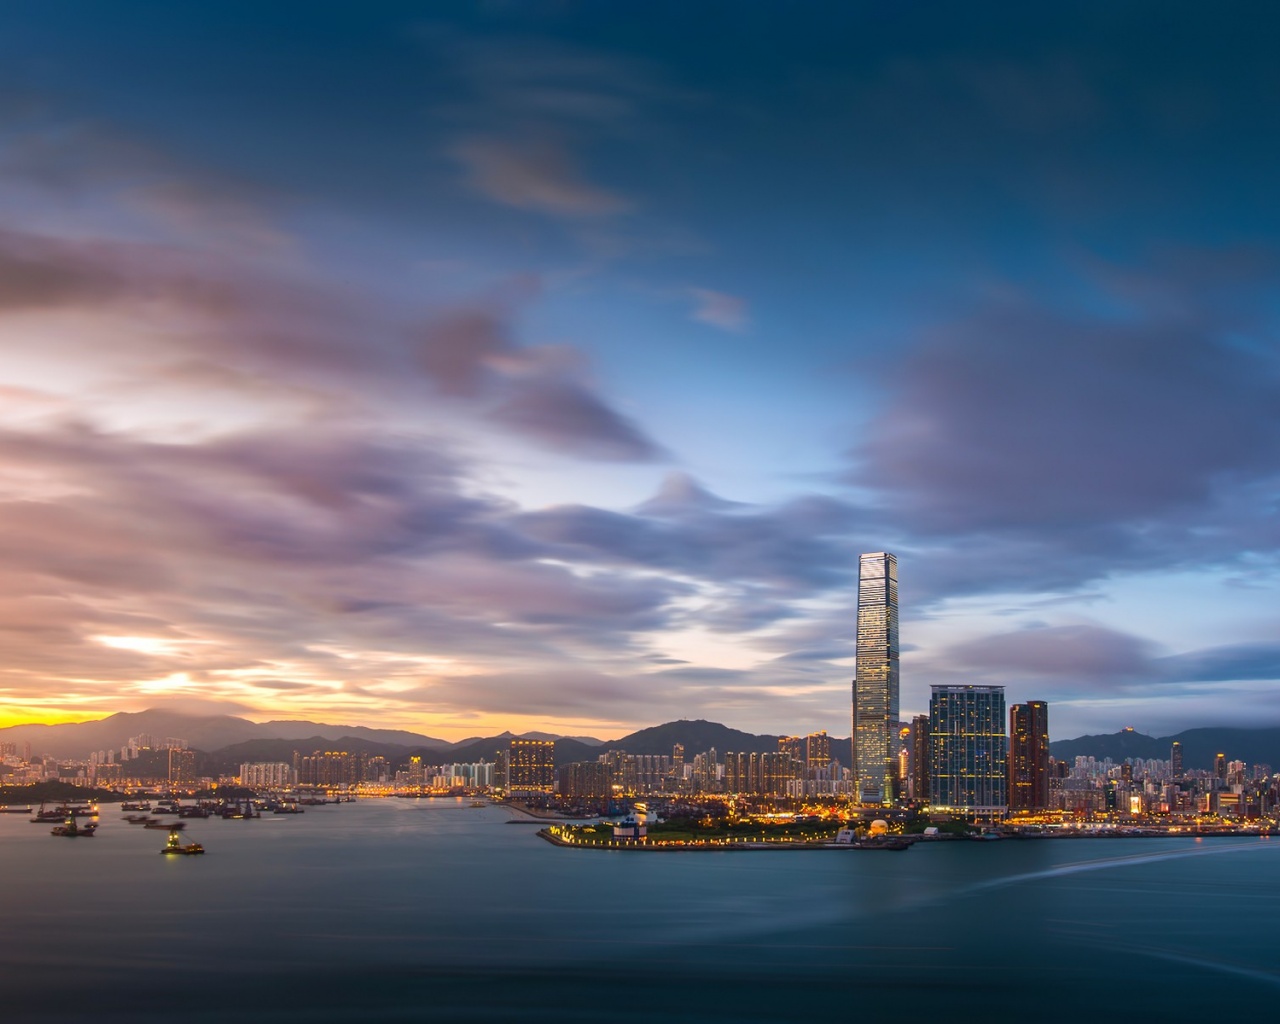 Hong Kong Evening Sunset Sky Clouds Bay Building Fires Port Metropolis City